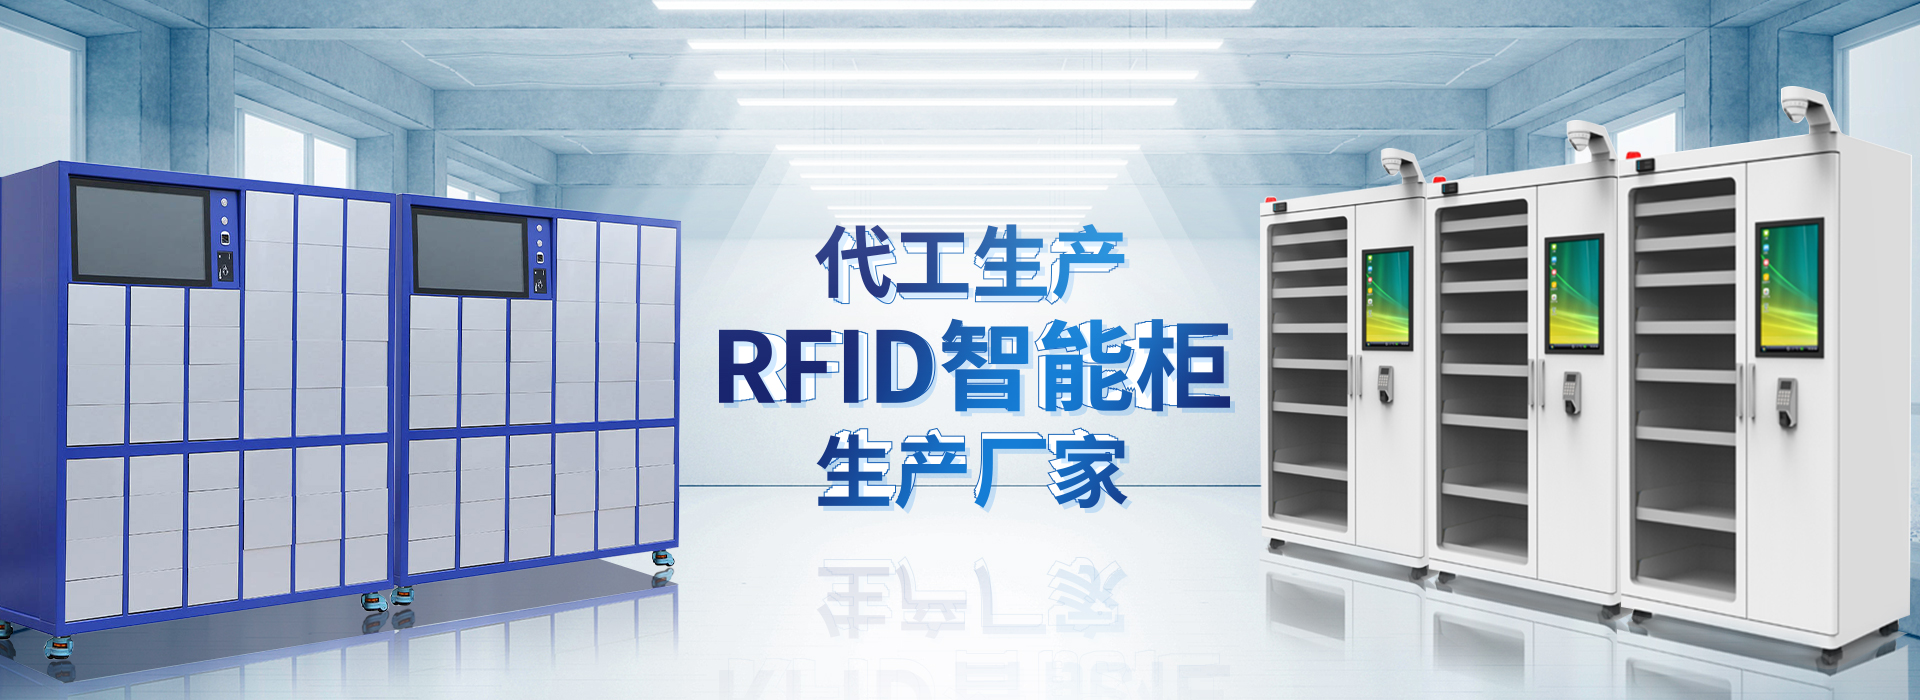 长相思主营智能柜,RFID工具柜,智能称重柜等系列产品.